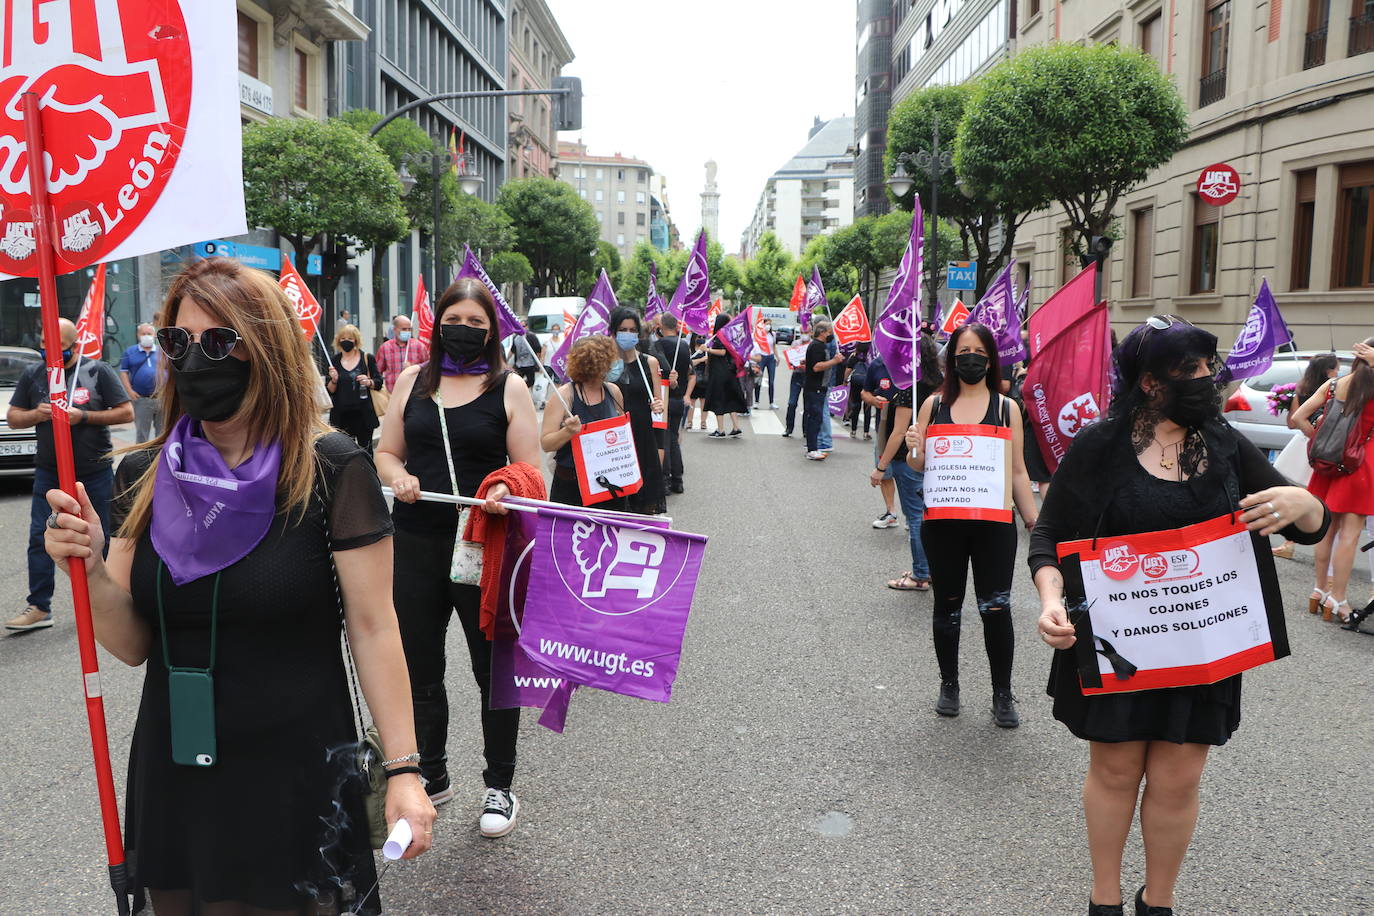 La organización sindical ha desfilado por las calles de León en una procesión a modo de funeral en el que claman contra los recortes en los servicios públicos.